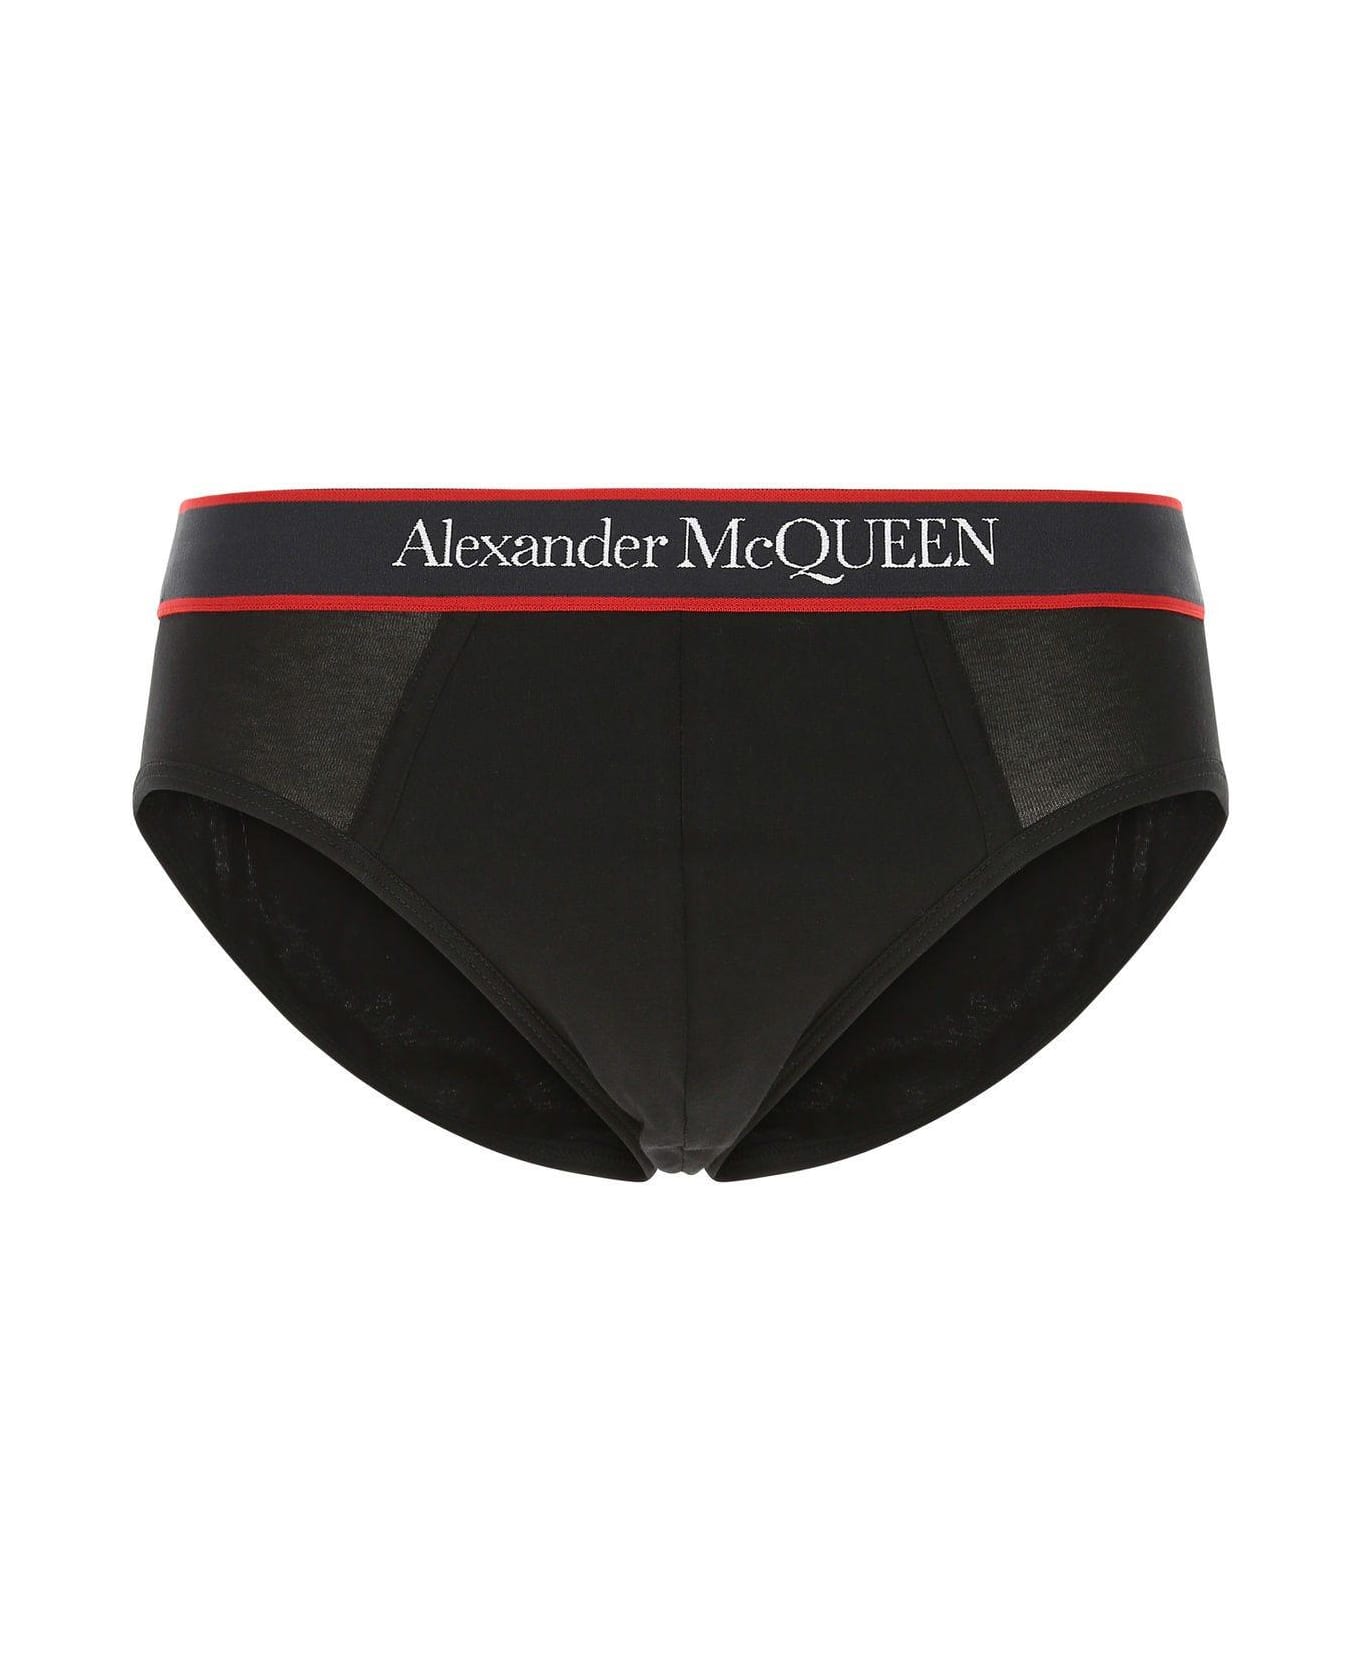 Alexander McQueen Black Stretch Cotton Slip - Black